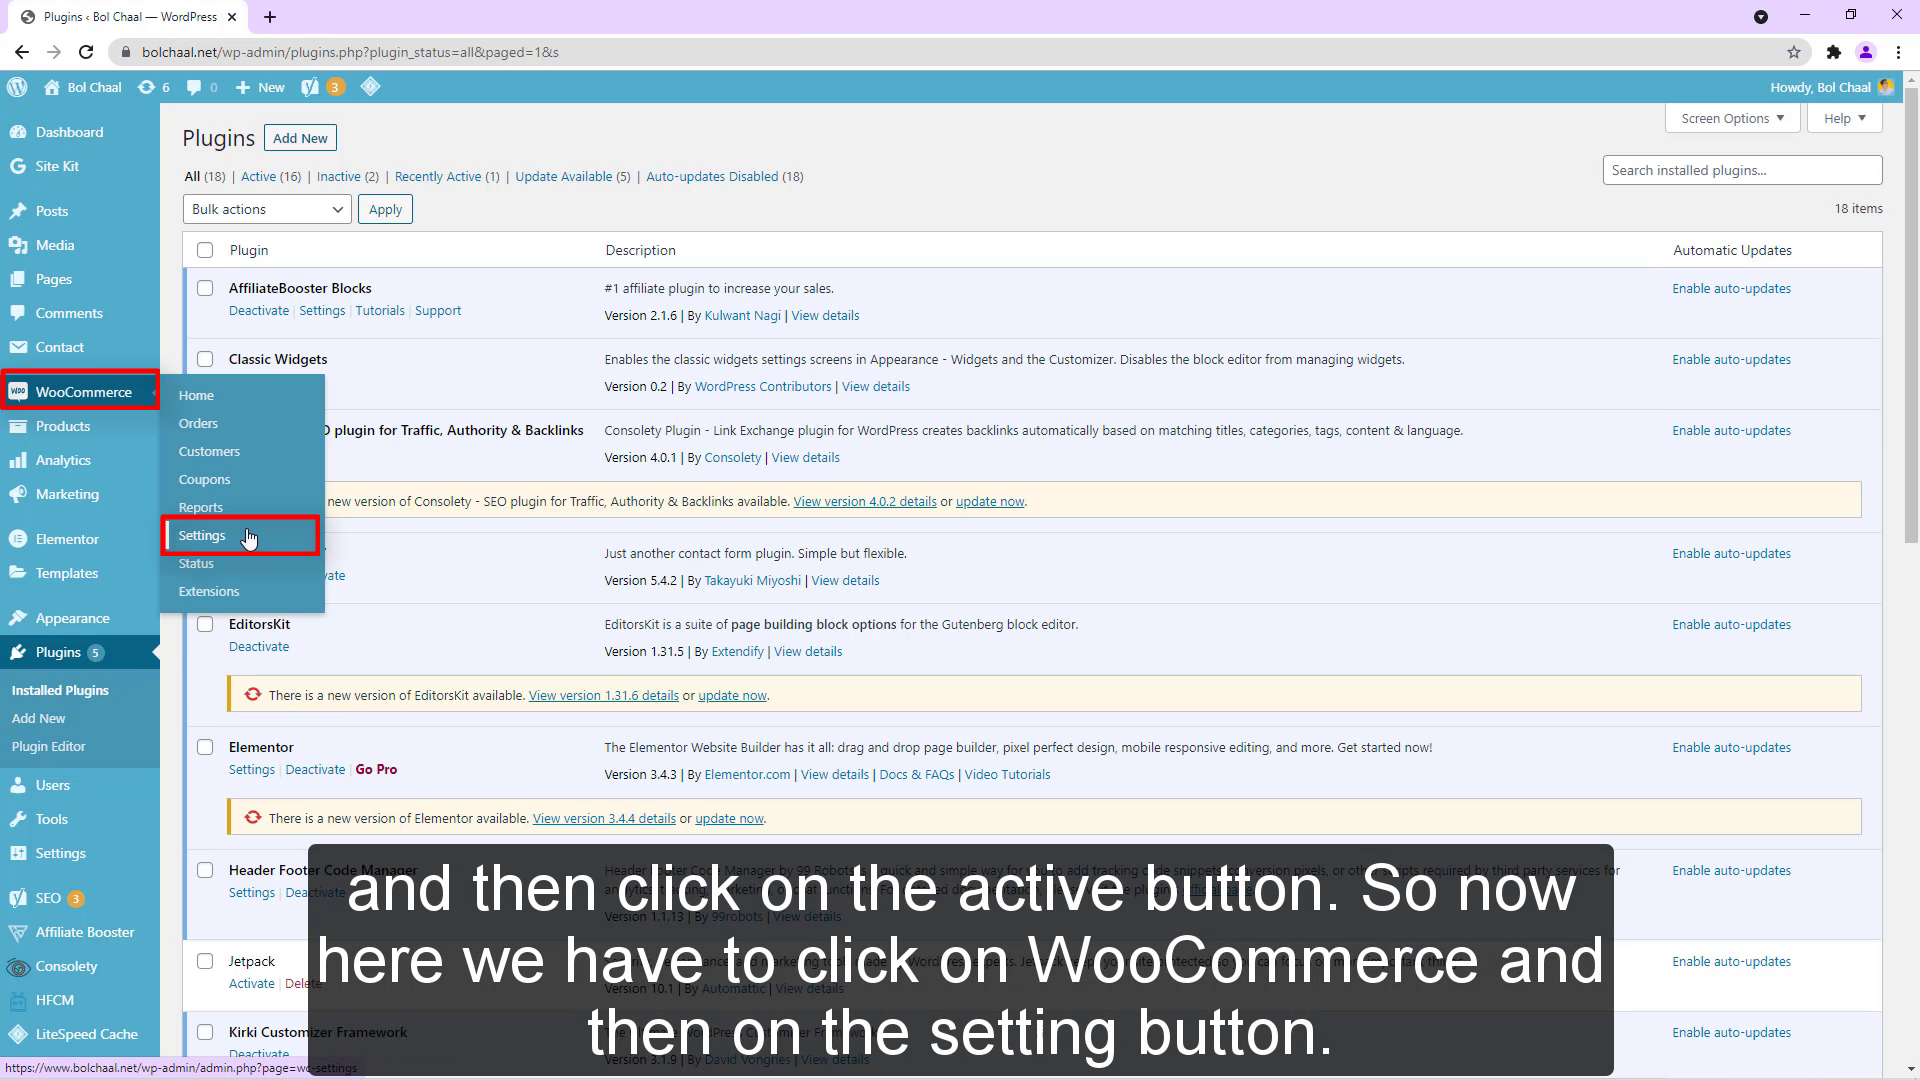 Así que ahora tenemos que hacer clic en woocommerce y luego en el botón de configuración